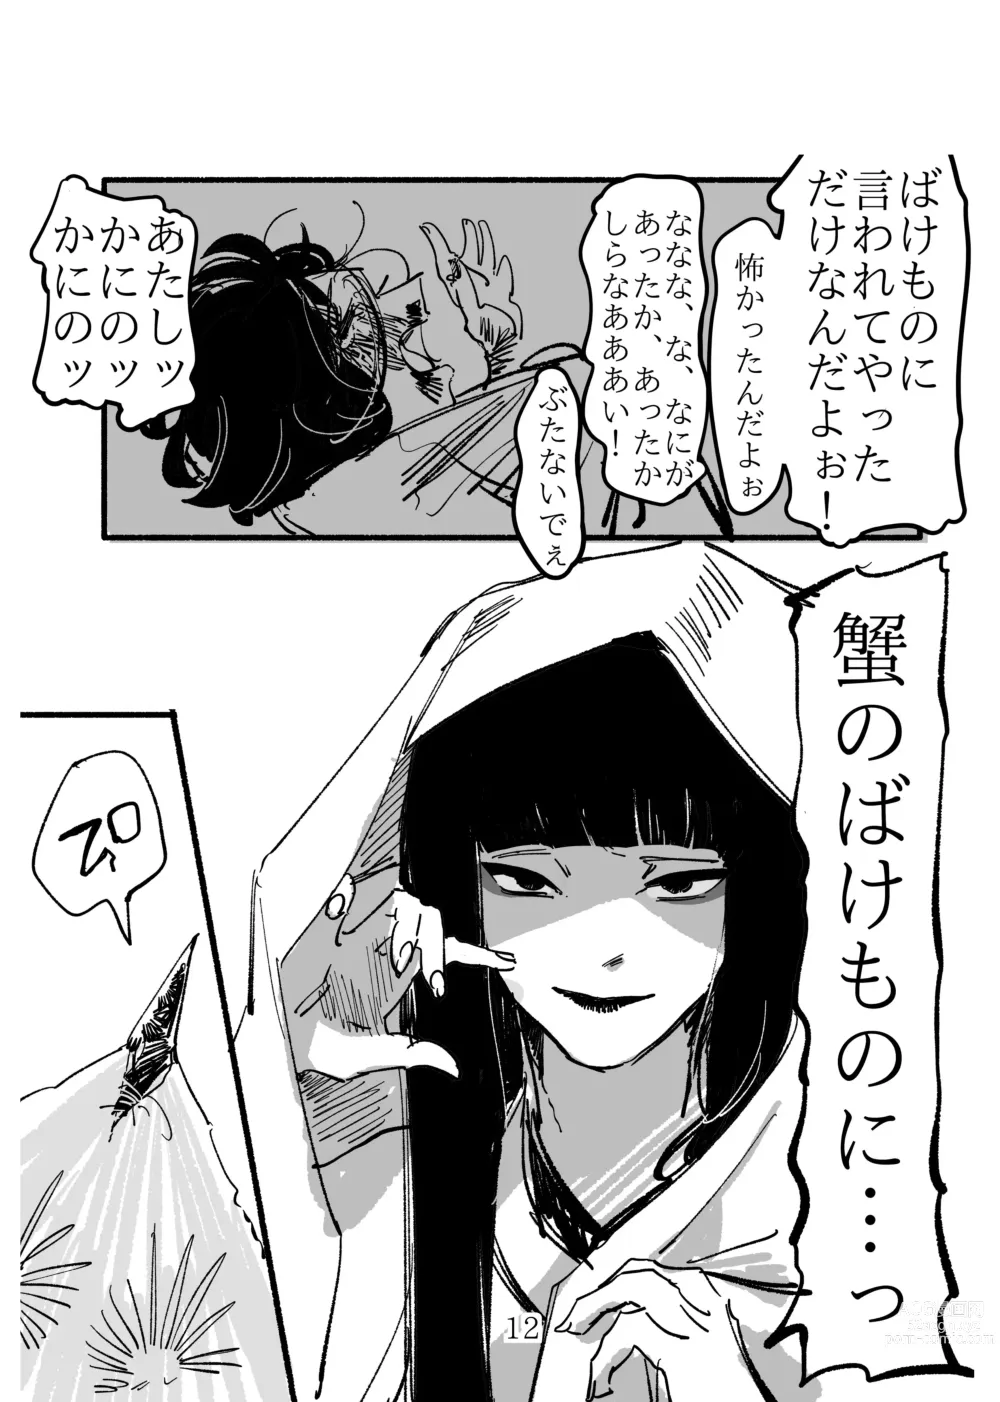 Page 12 of doujinshi Shoujo ni Koi Shita